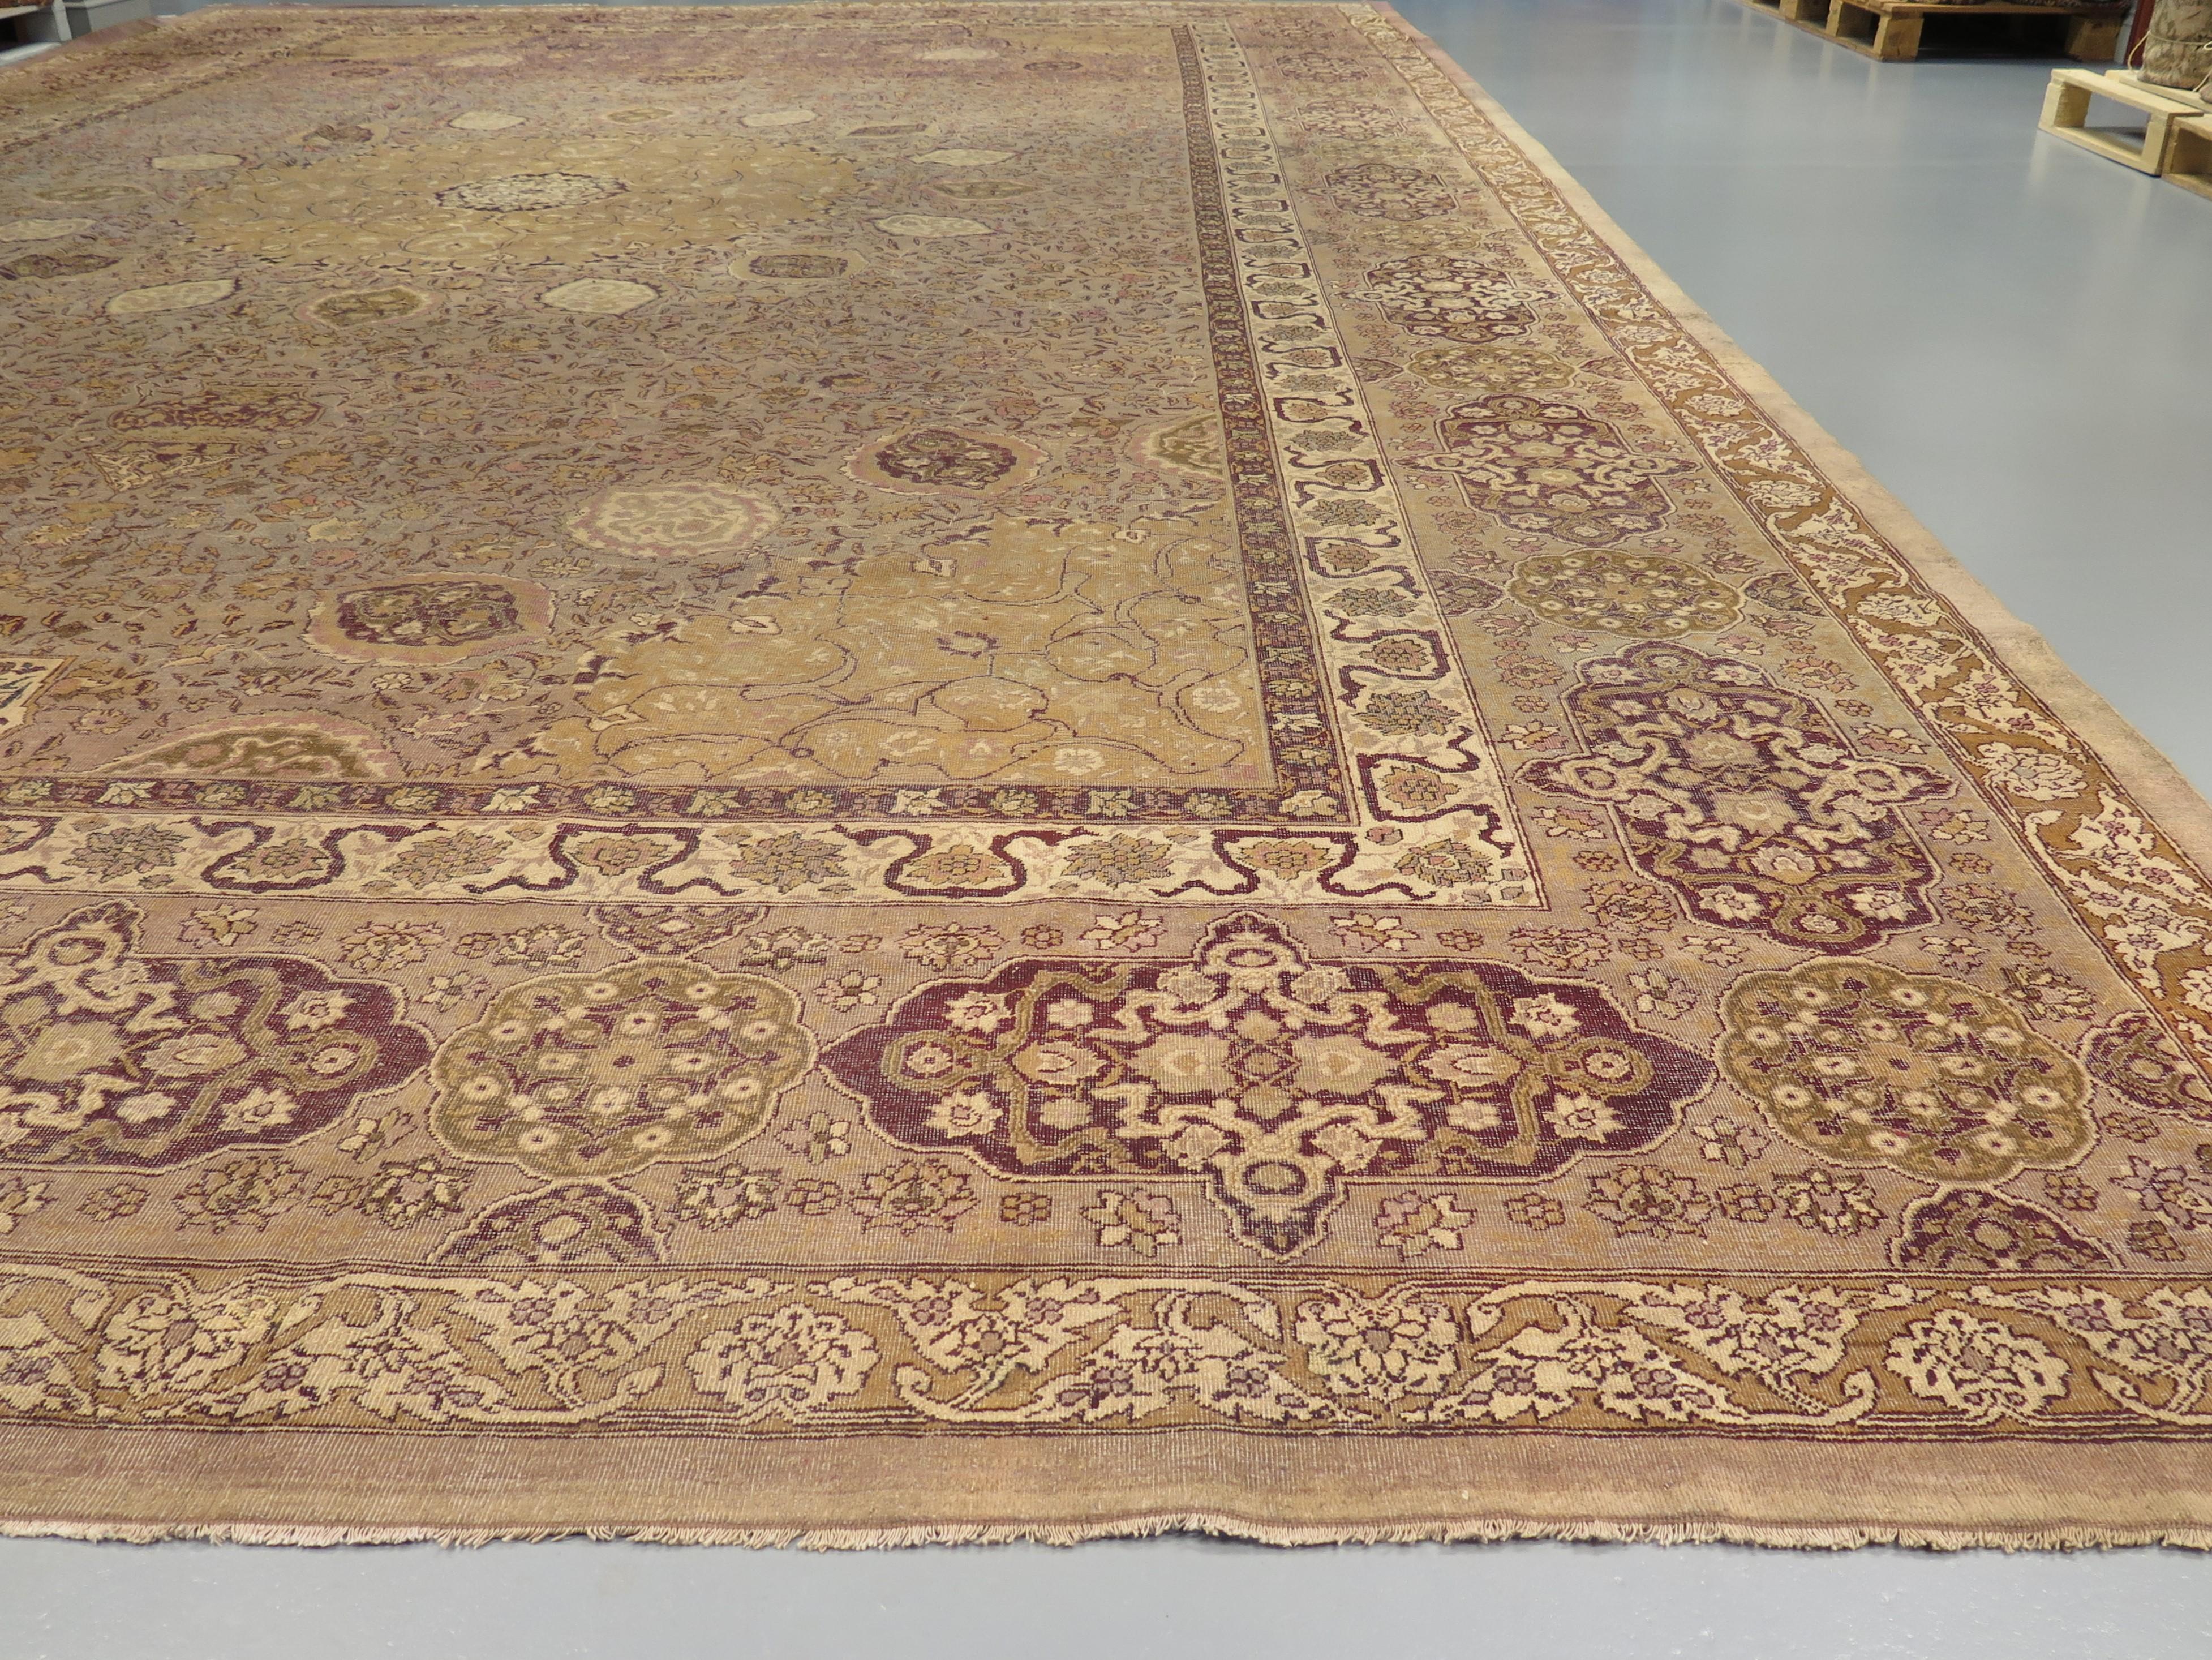 Die Herstellung von Teppichen hat in Indien eine ehrwürdige Geschichte, die bis in die Mogulzeit des 16. Jahrhunderts zurückreicht, aber in Amritsar im späten 19. Jahrhundert unter der Ägide der britischen Kolonialherrschaft eine wahre Renaissance